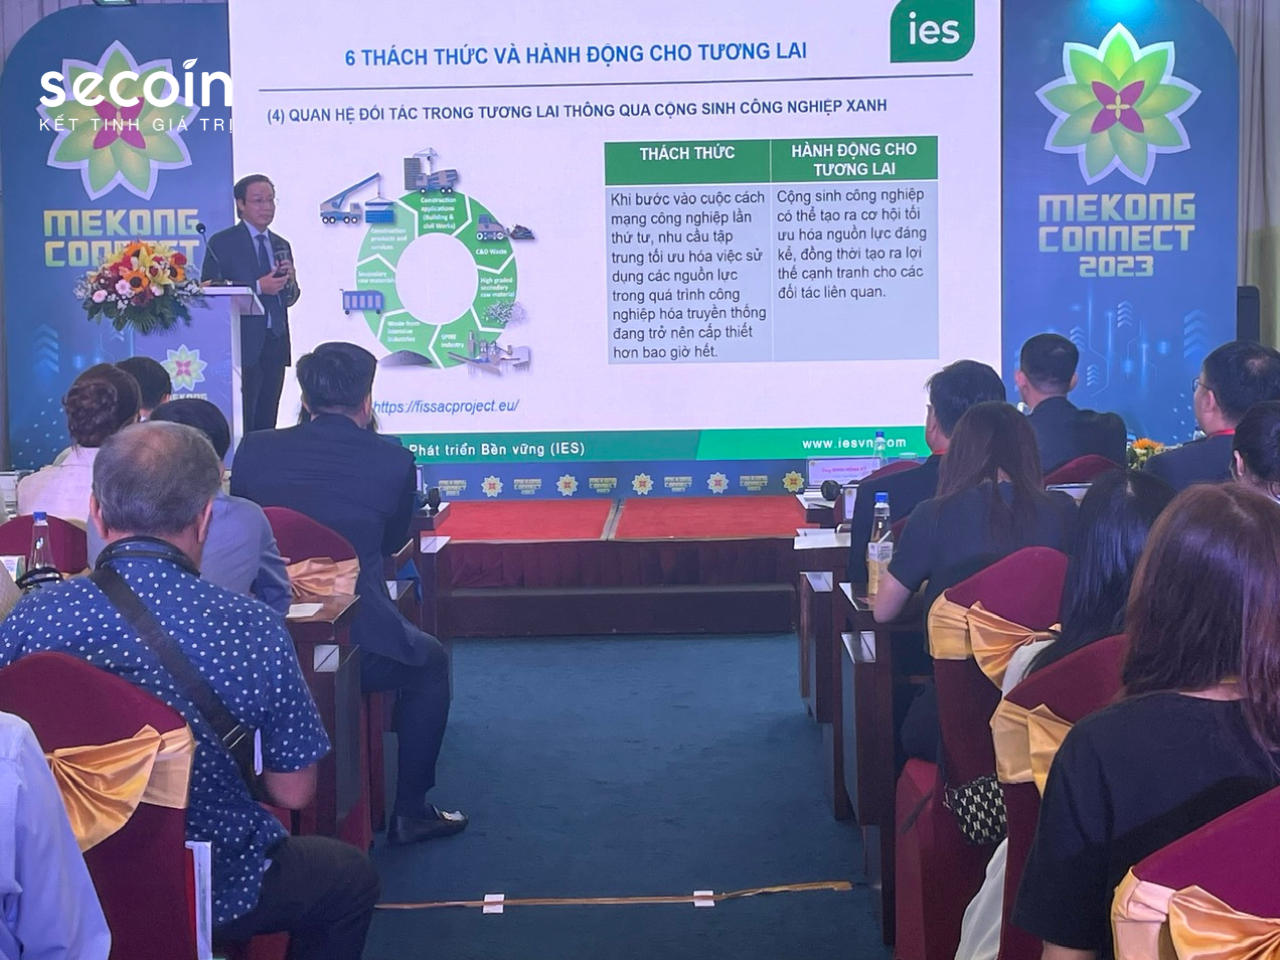 Ông Đinh Hồng Kỳ - Chủ tịch Secoin tham gia Diễn đàn Mekong Connect 2023